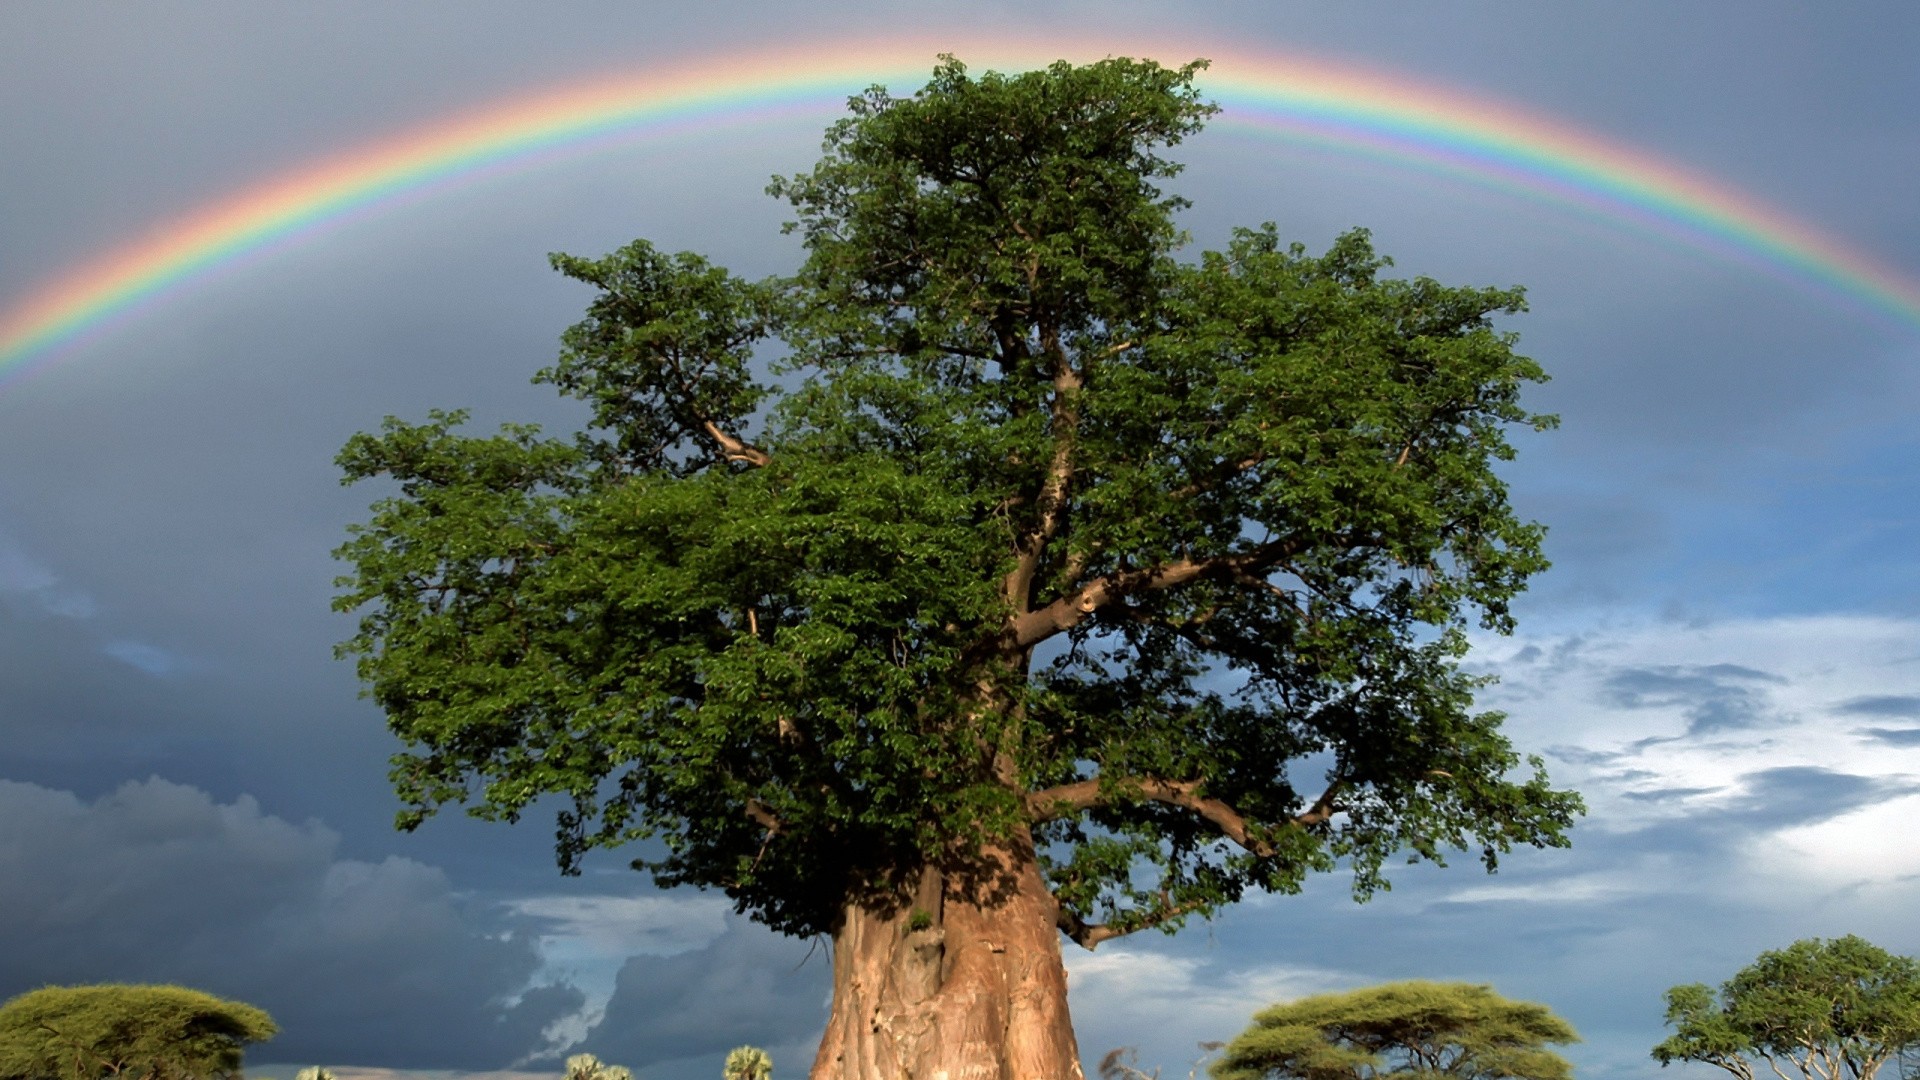 743345 descargar imagen tierra/naturaleza, arco iris, arbol del baobab, verde, cielo, árbol: fondos de pantalla y protectores de pantalla gratis